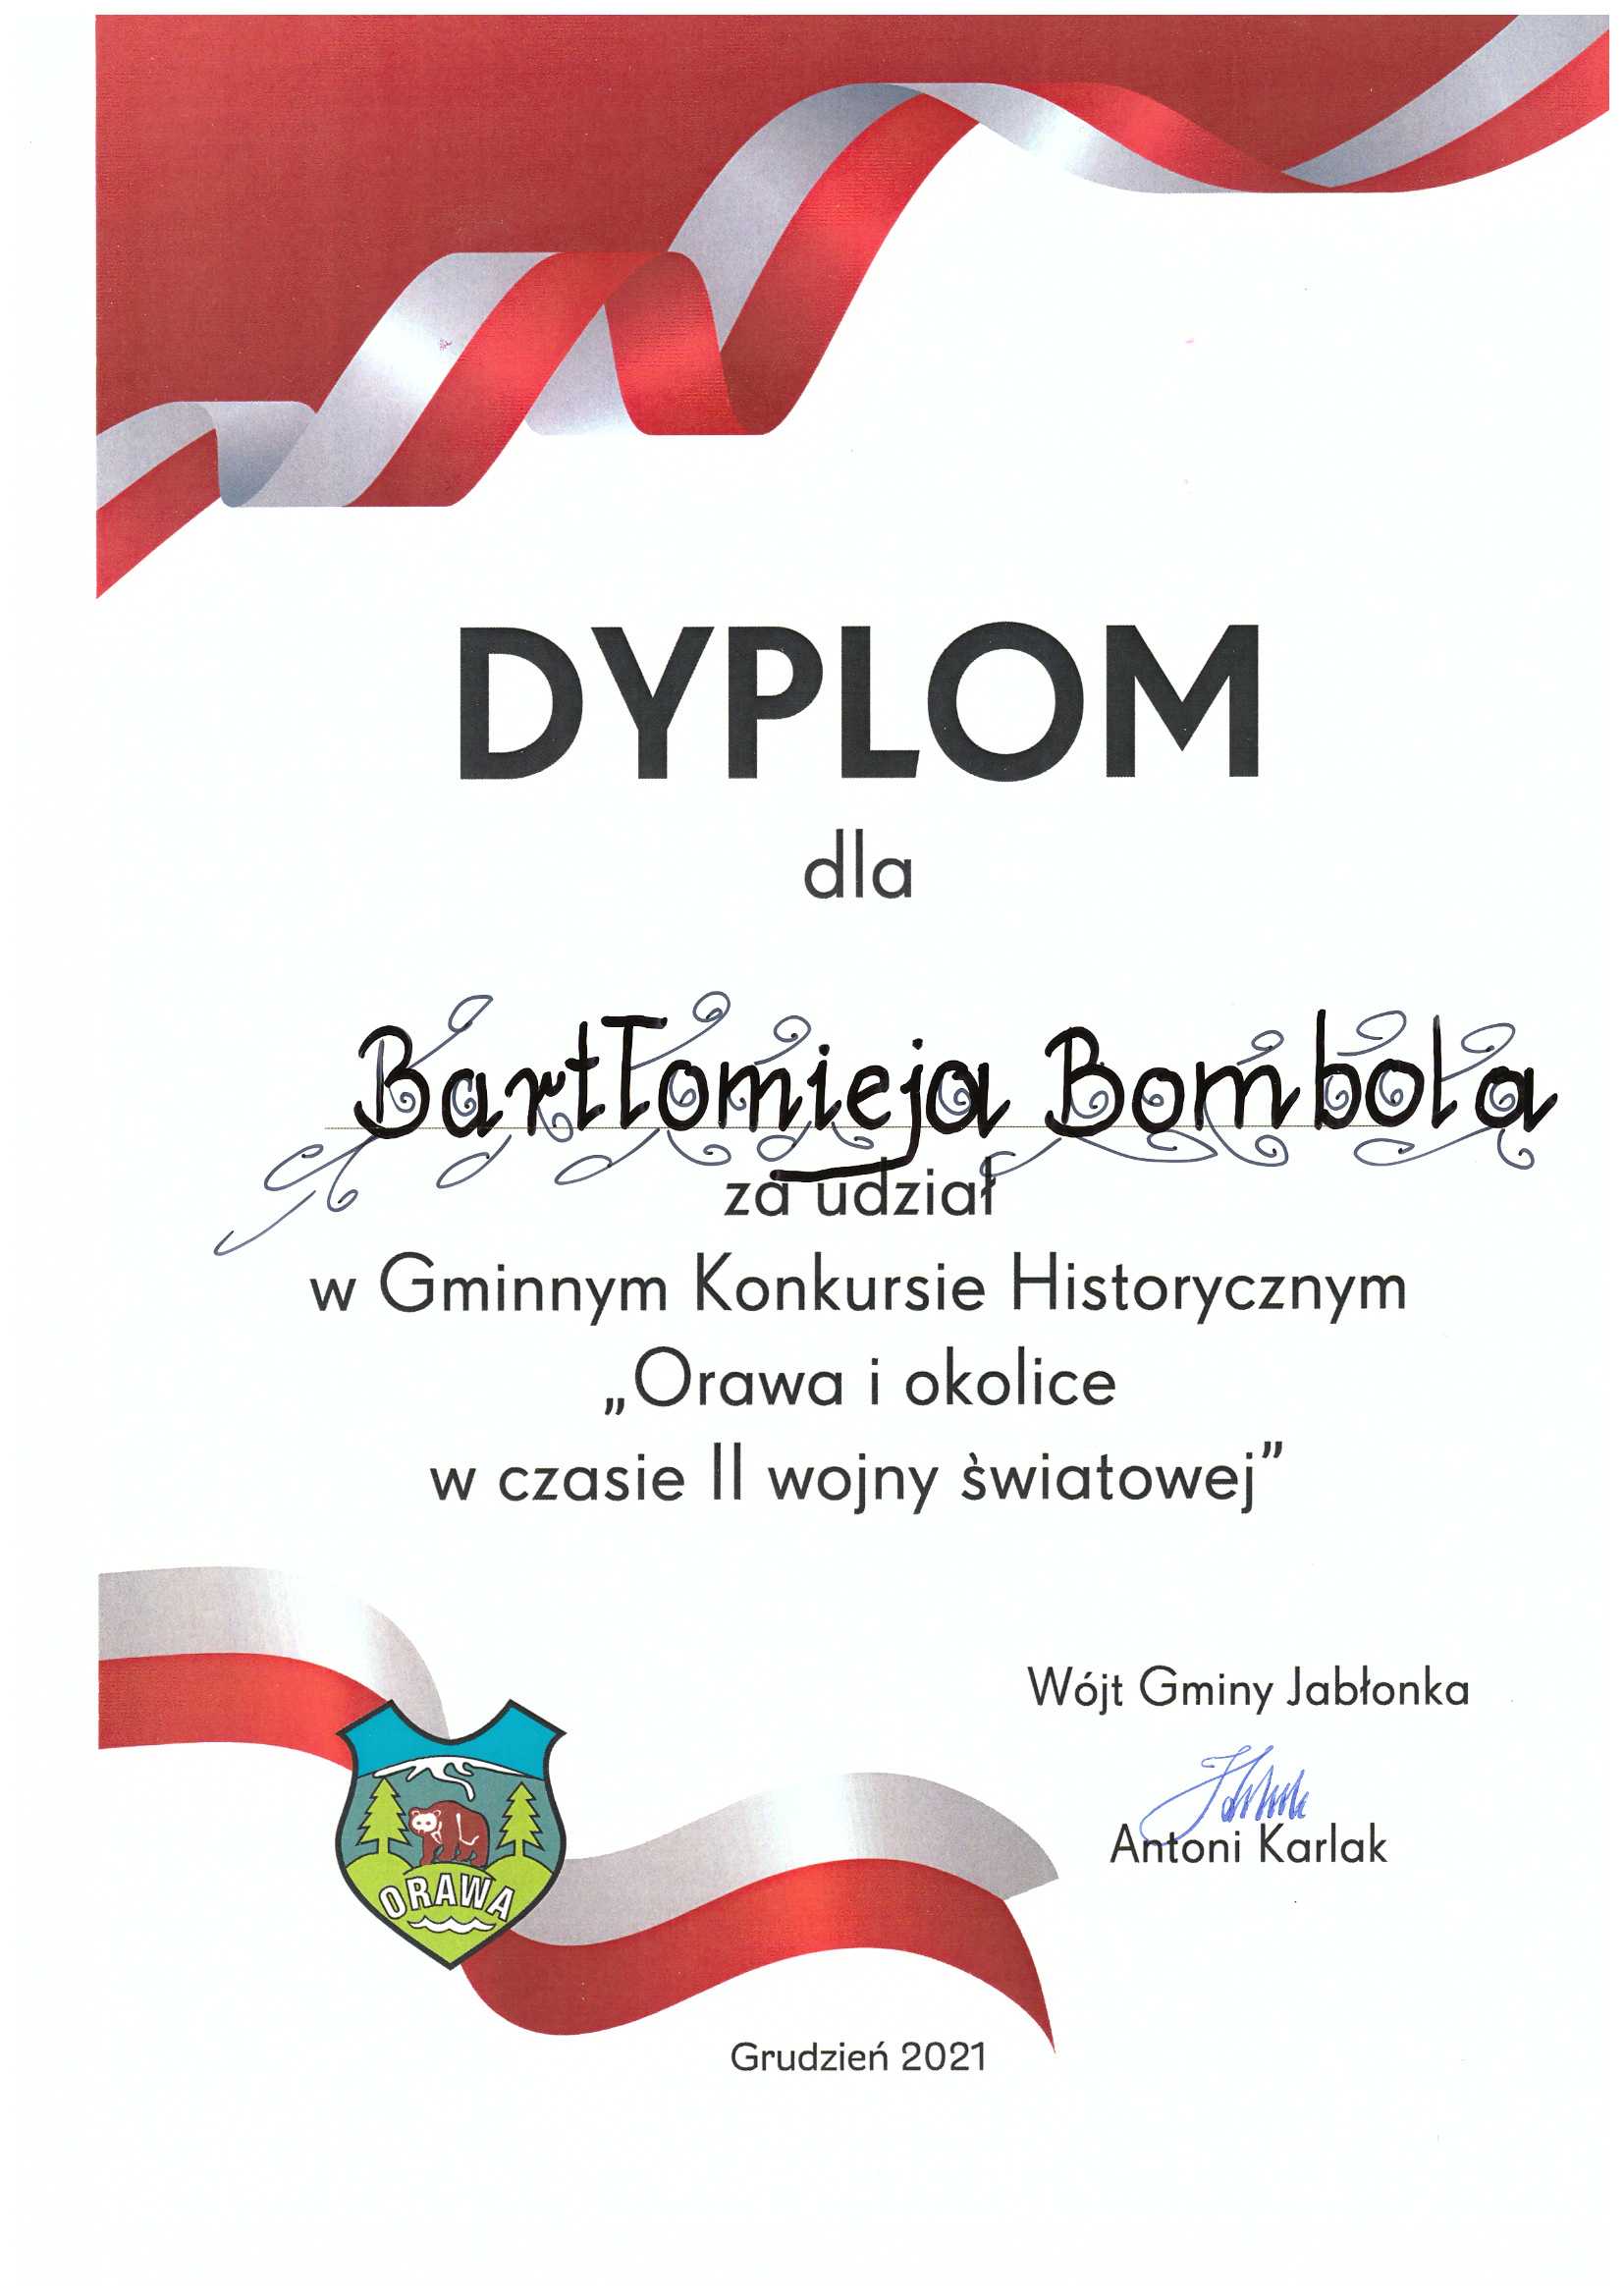 Dyplom dla Bartłomieja Bombola za udział w Gminnym Konkursie Historycznym "Orawa i okolice w czasie II wojny światowej" 